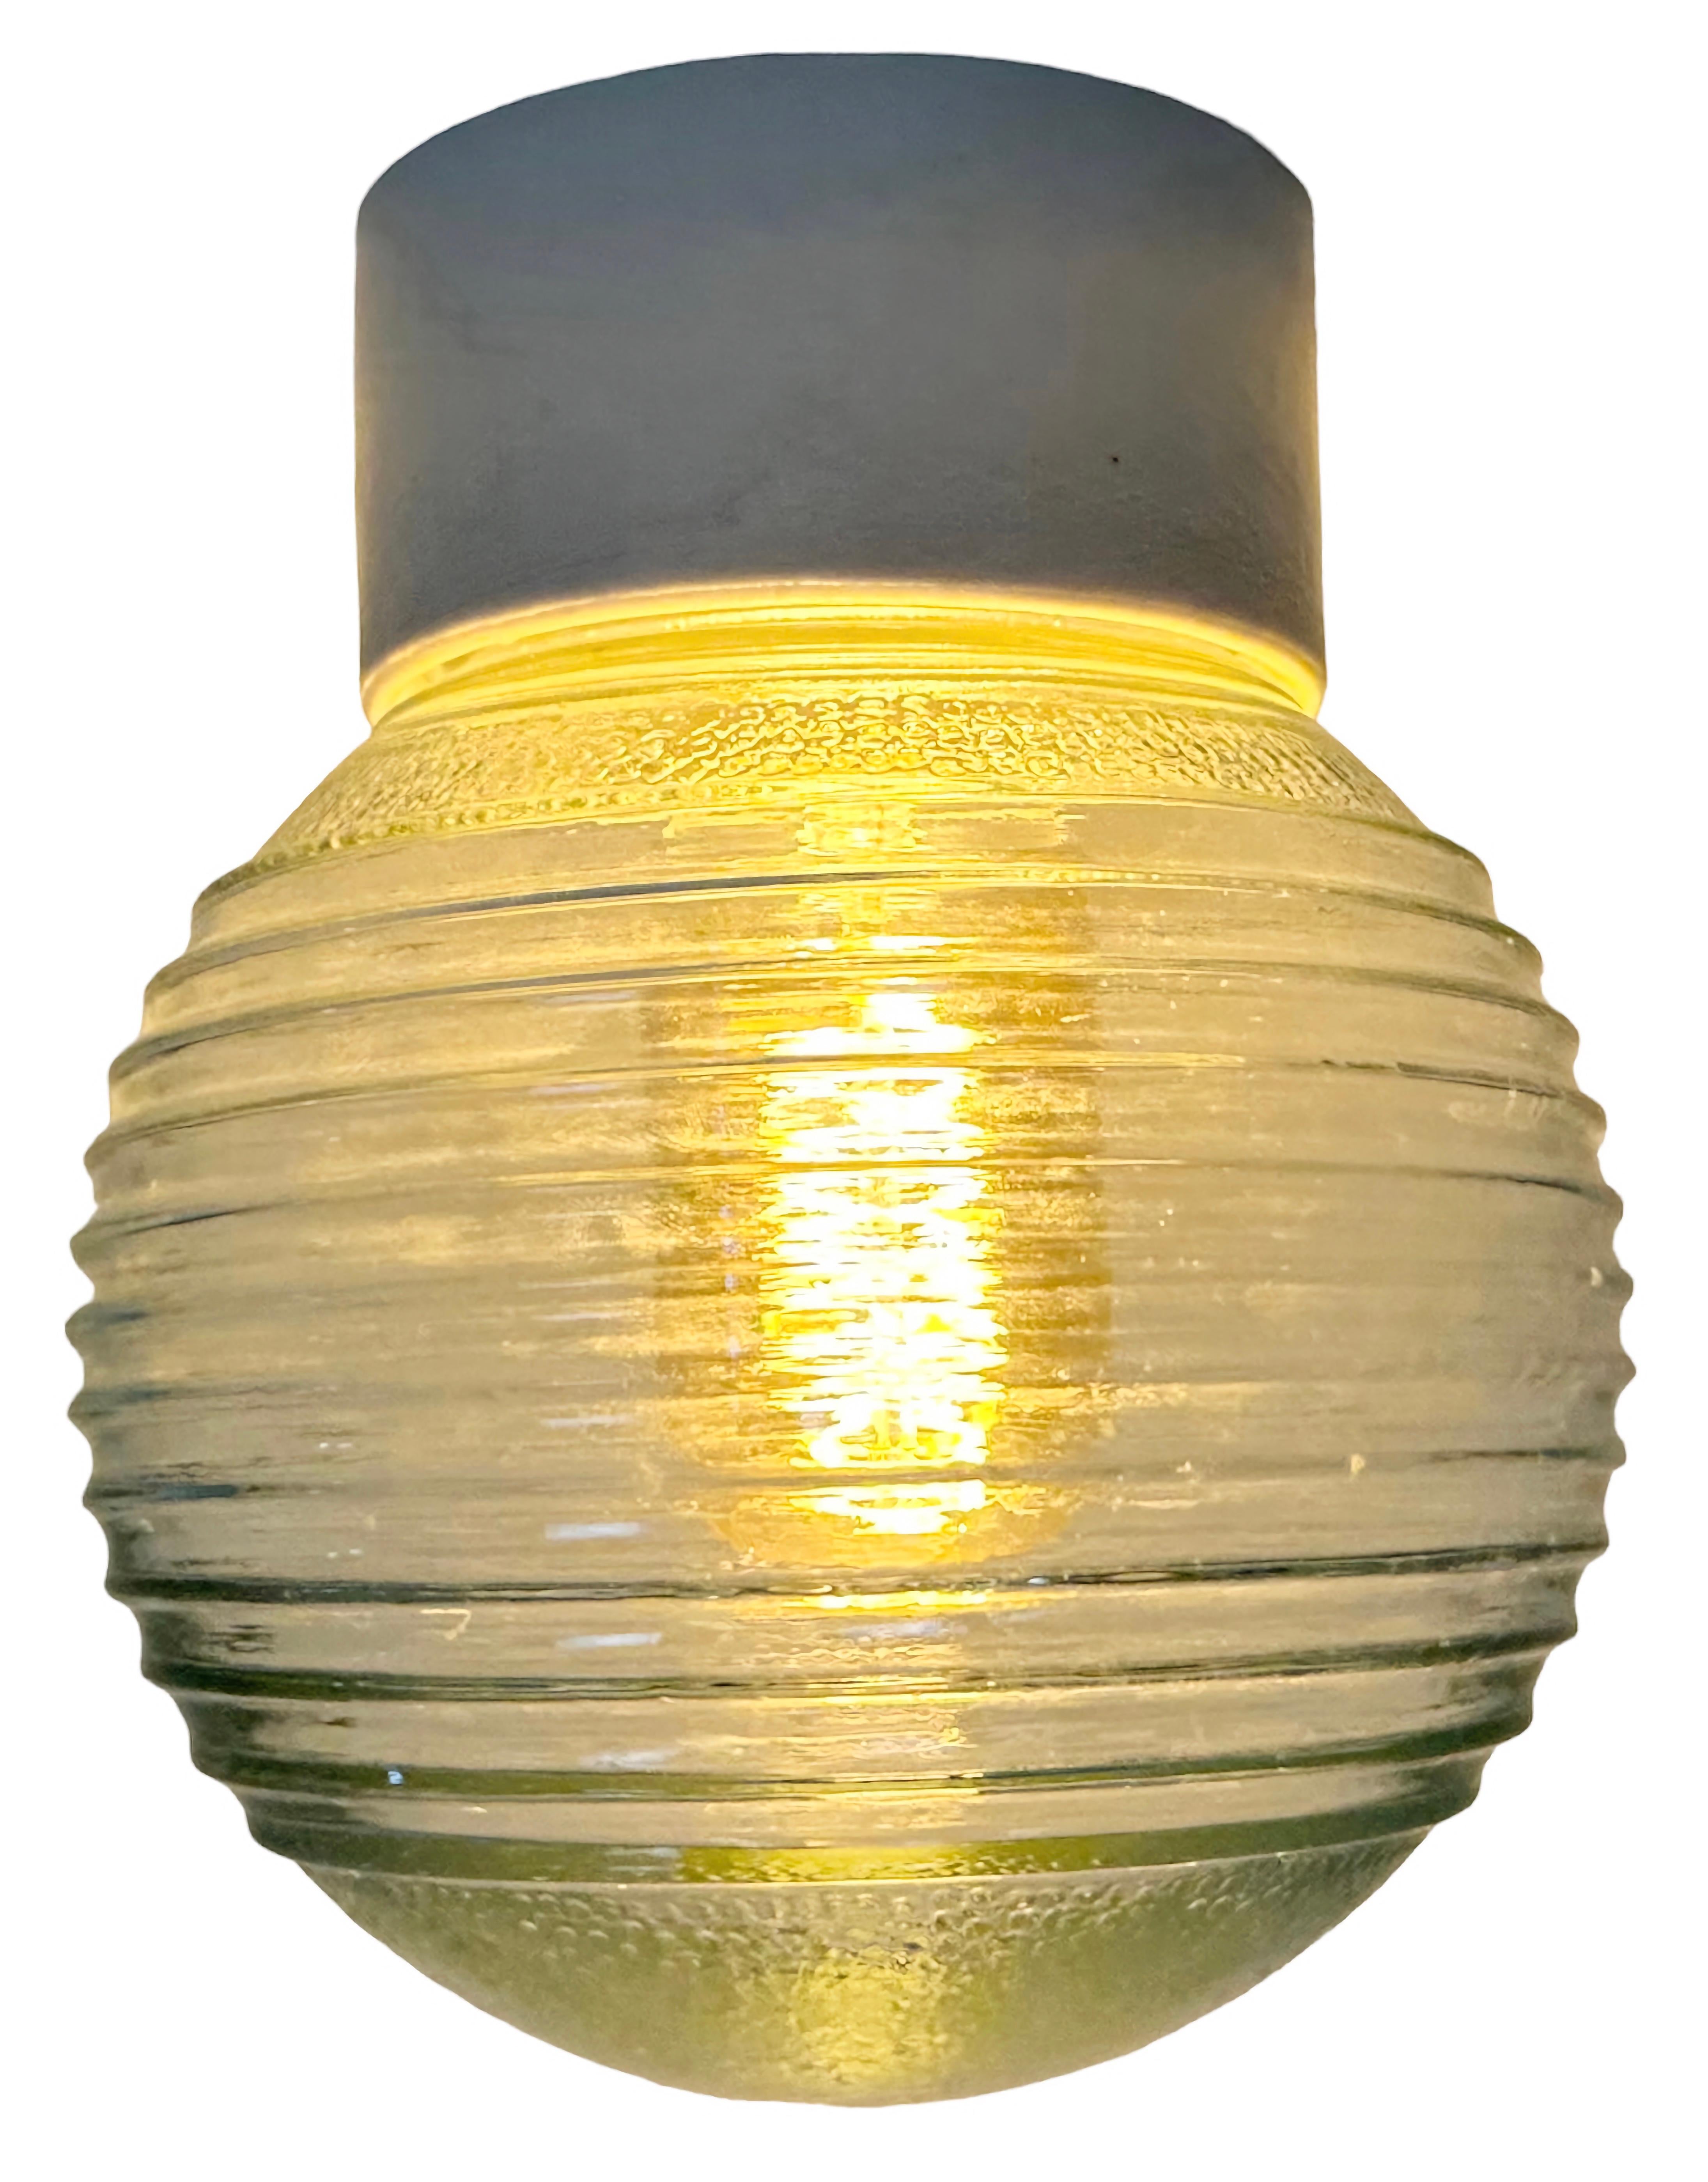 Lampe industrielle vintage fabriquée en Pologne dans les années 1970. Whiting se caractérise par une fixation au plafond en porcelaine blanche et un couvercle en verre dépoli. La douille est compatible avec les ampoules E27/E 26. Un nouveau fil. Le